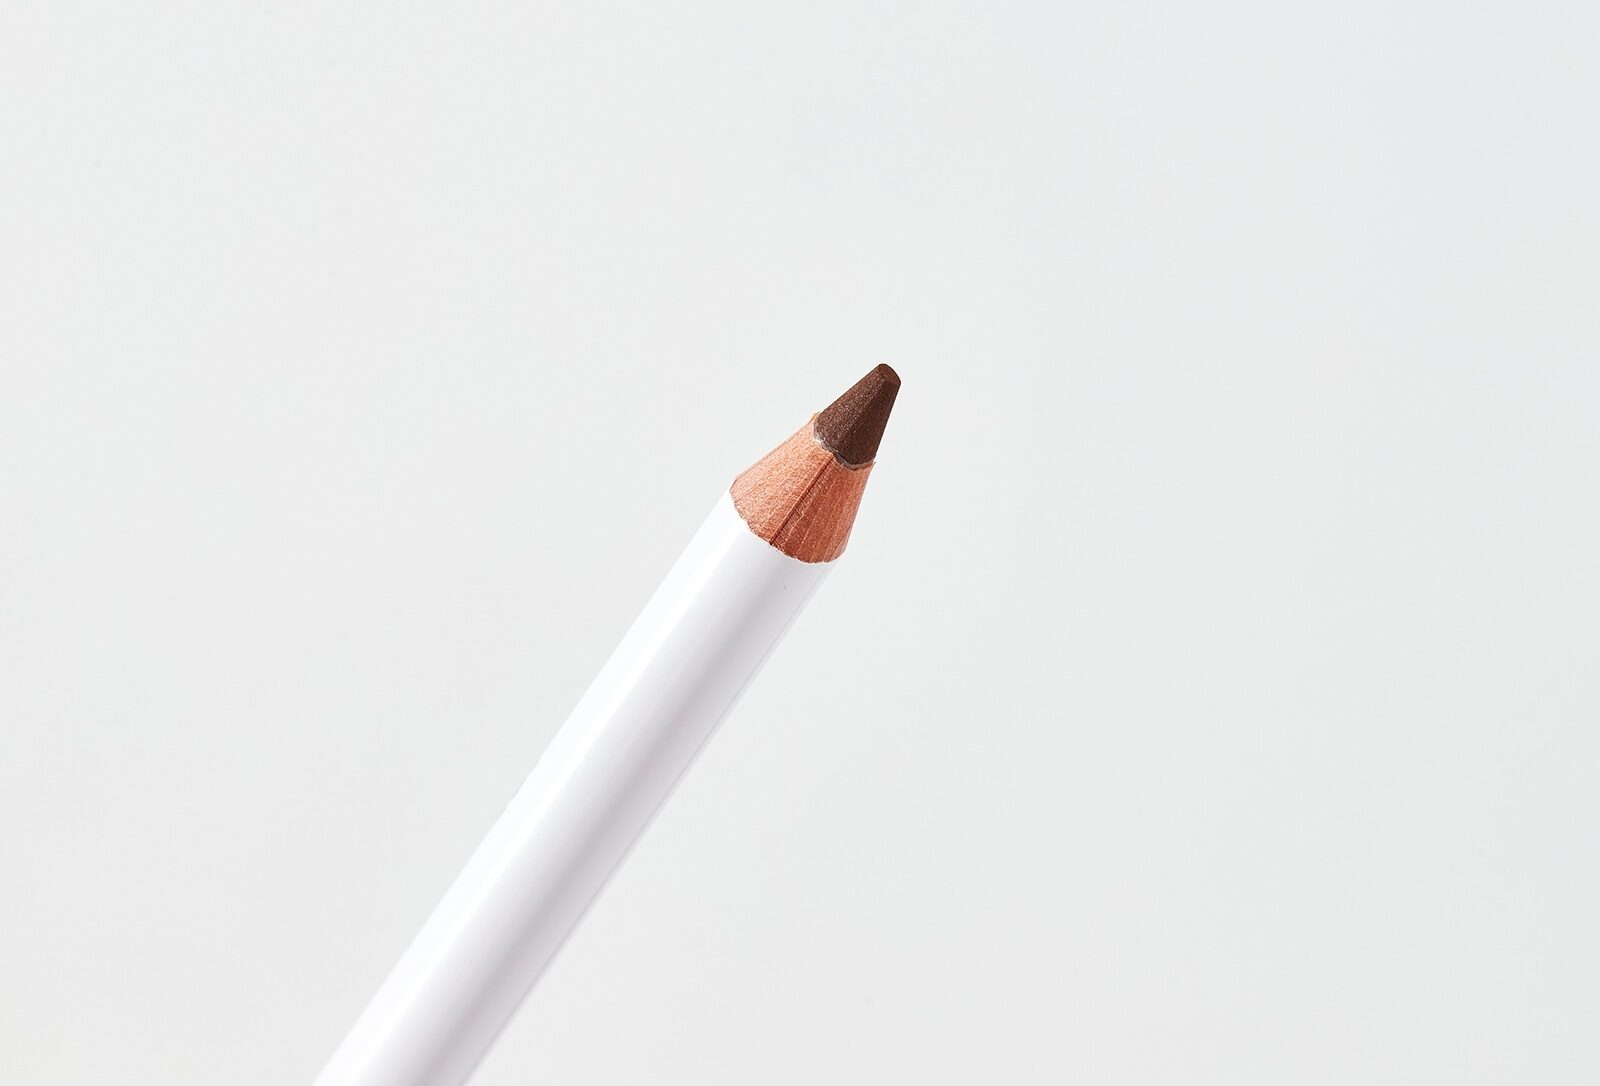 Shik brown. Shik Brow Powder Pencil. Карандаш для бровей Shik Brow Powder Pencil. Shik пудровый карандаш Medium. Shik пудровый карандаш Dark.